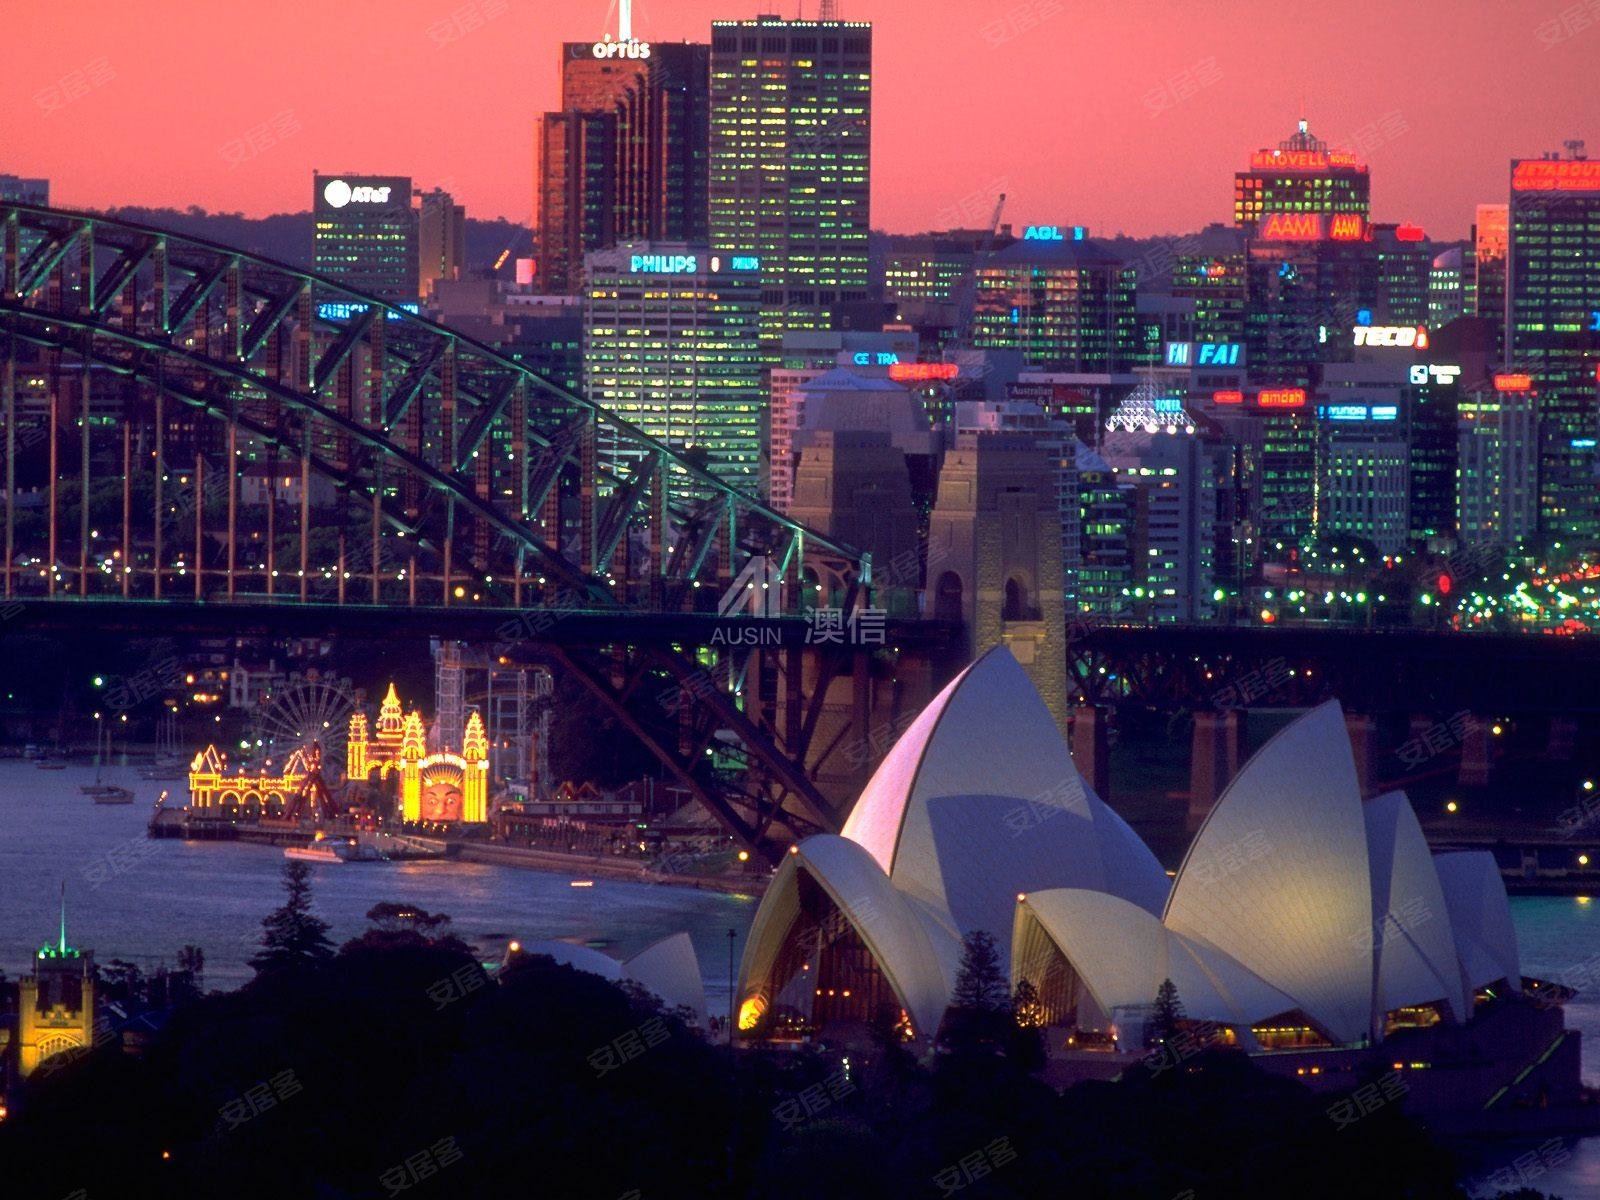 澳大利亚首都 城市图片